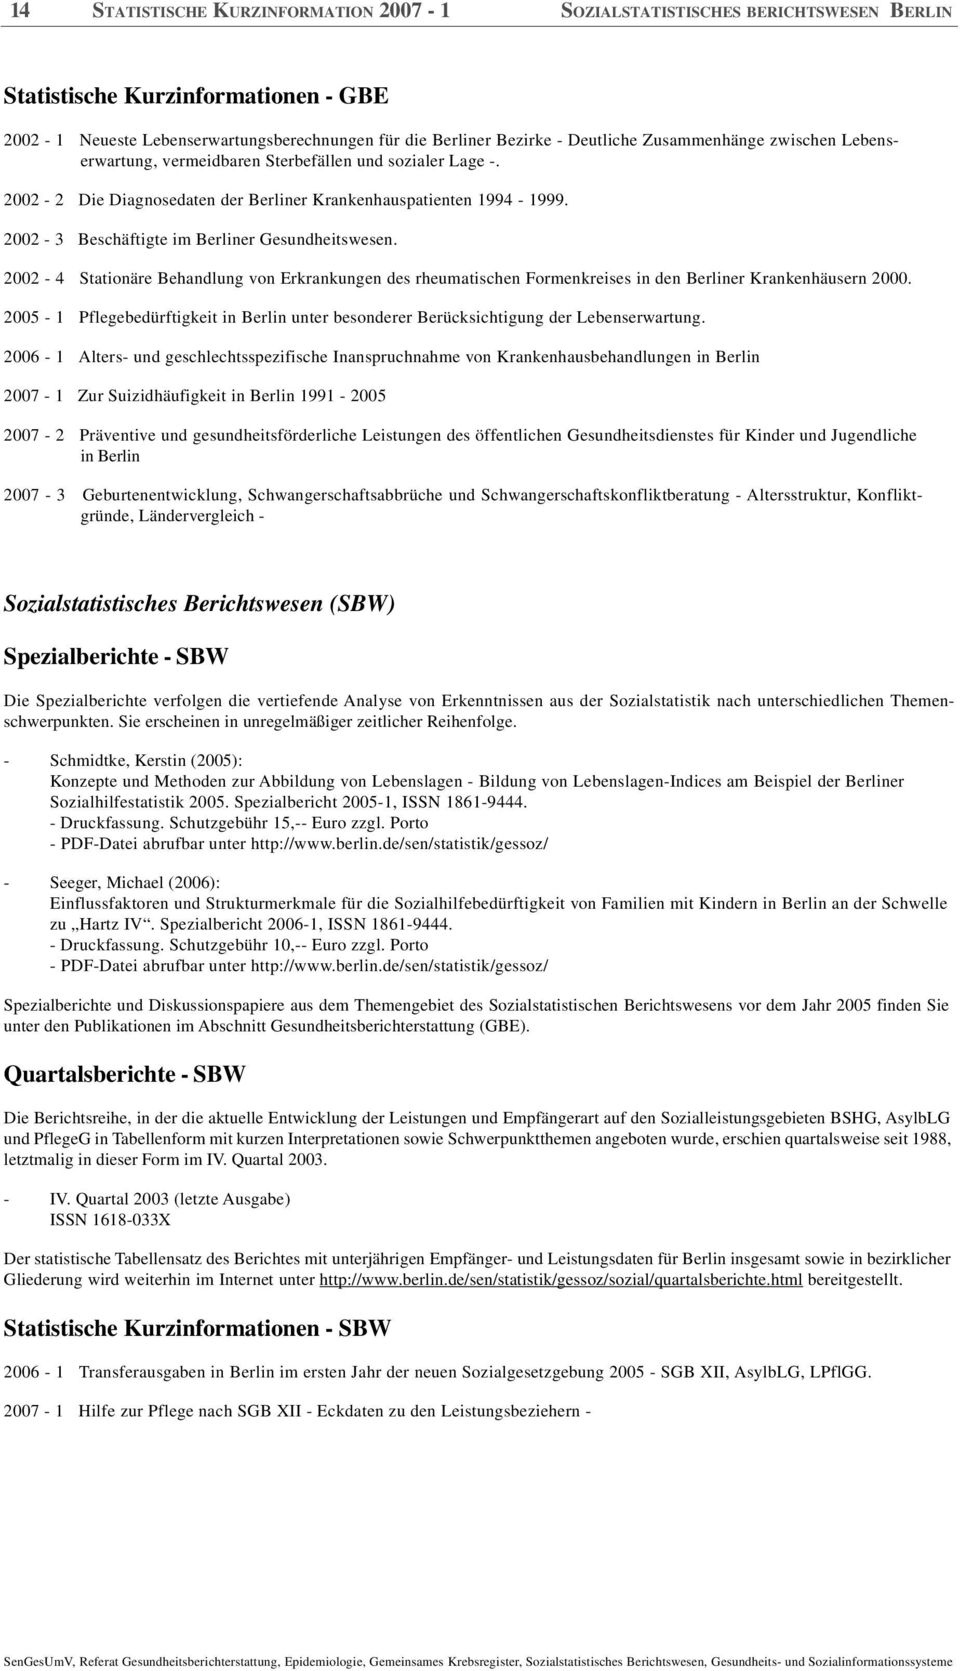 2002-3 Beschäftigte im Berliner Gesundheitswesen. 2002-4 Stationäre Behandlung von Erkrankungen des rheumatischen Formenkreises in den Berliner Krankenhäusern 2000.